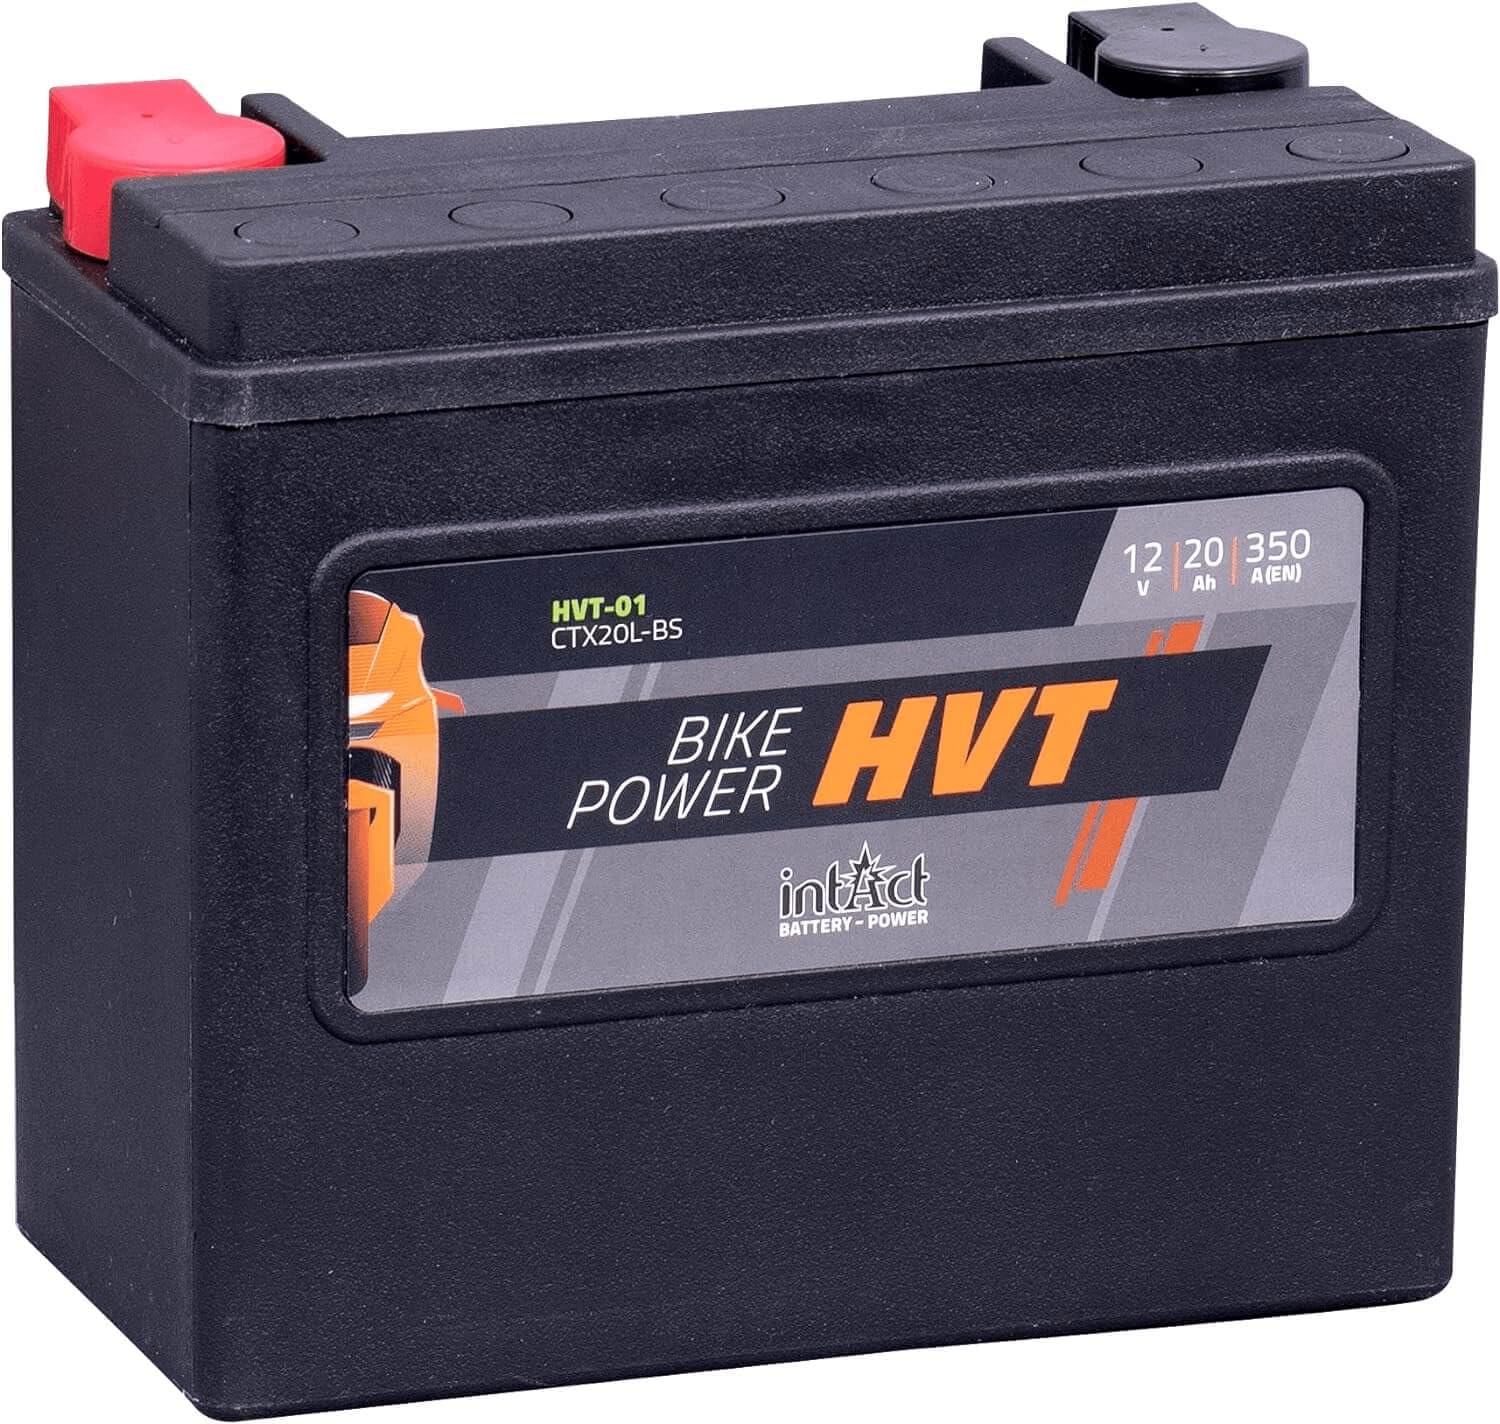 intAct - HVT MOTORRADBATTERIE | Batterie für Roller, Motorrad, Rasentraktor. Wartungsfreier & auslaufsicherer Akku. | HVT-01, CTX20L-BS, 65989-97A, 12V Batterie, 20 AH (c20), 350 A (EN) | Maße: 175x87x155mm von Intact